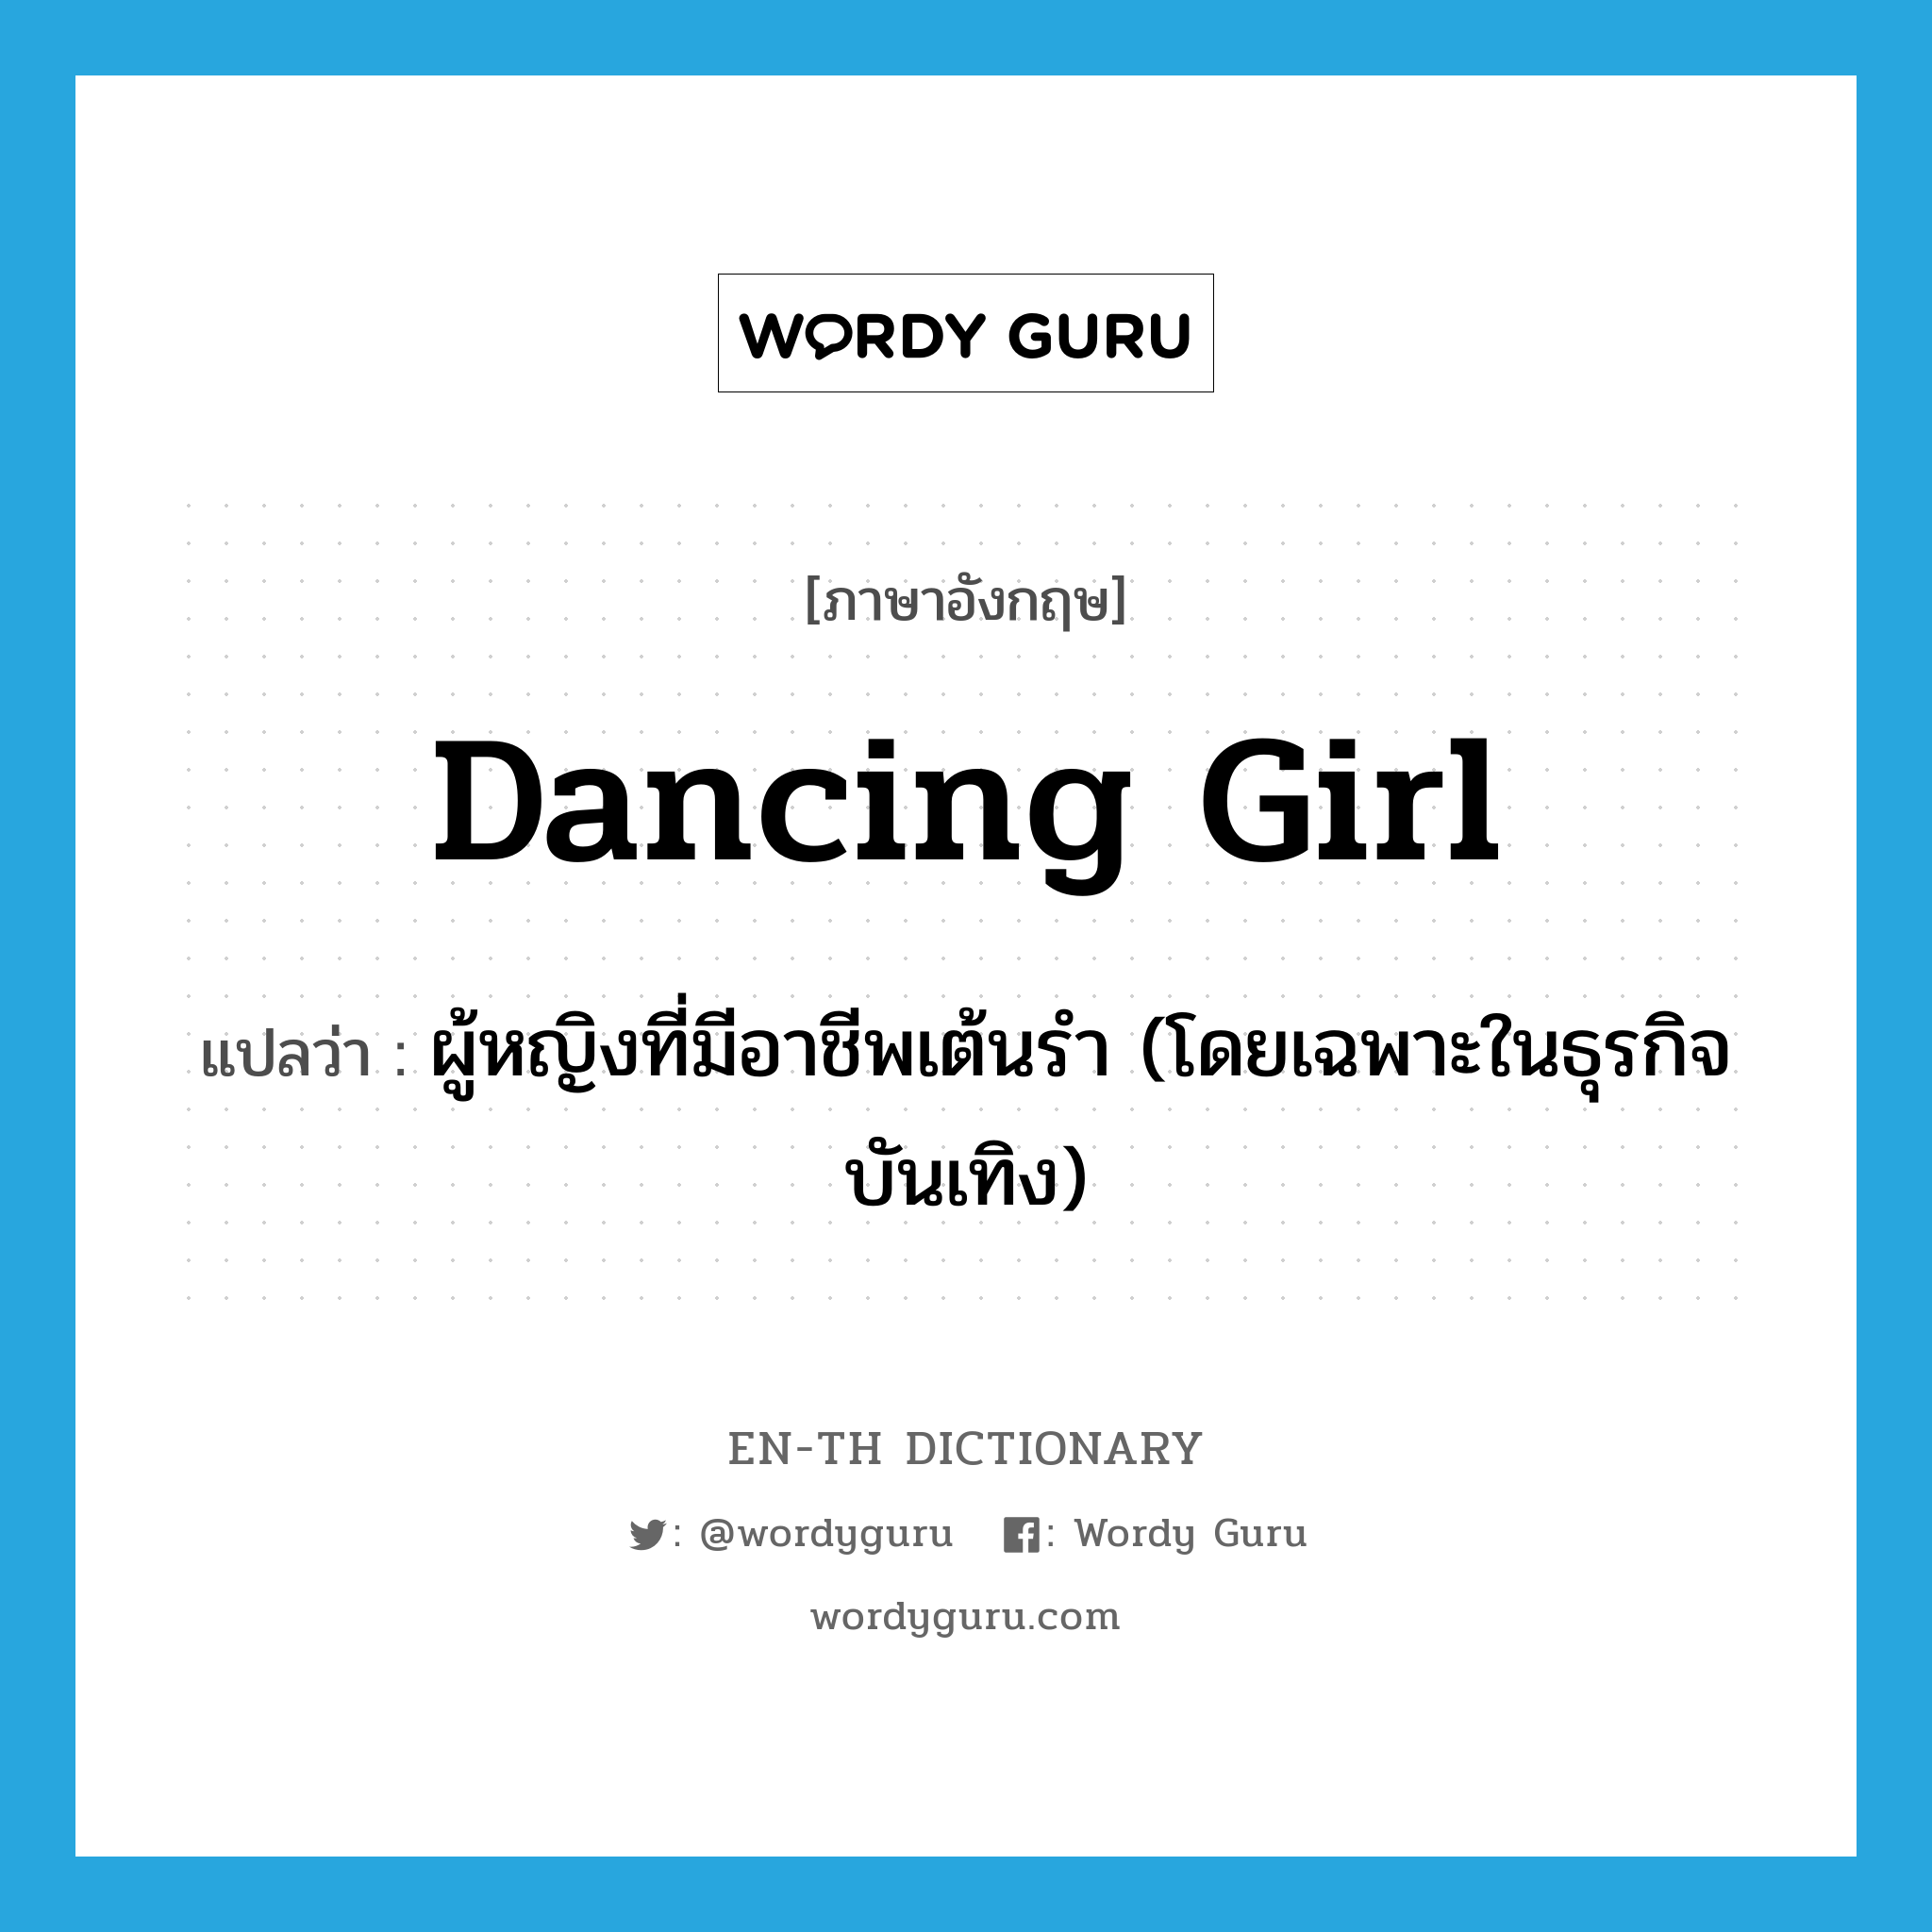 dancing girl แปลว่า?, คำศัพท์ภาษาอังกฤษ dancing girl แปลว่า ผู้หญิงที่มีอาชีพเต้นรำ (โดยเฉพาะในธุรกิจบันเทิง) ประเภท N หมวด N